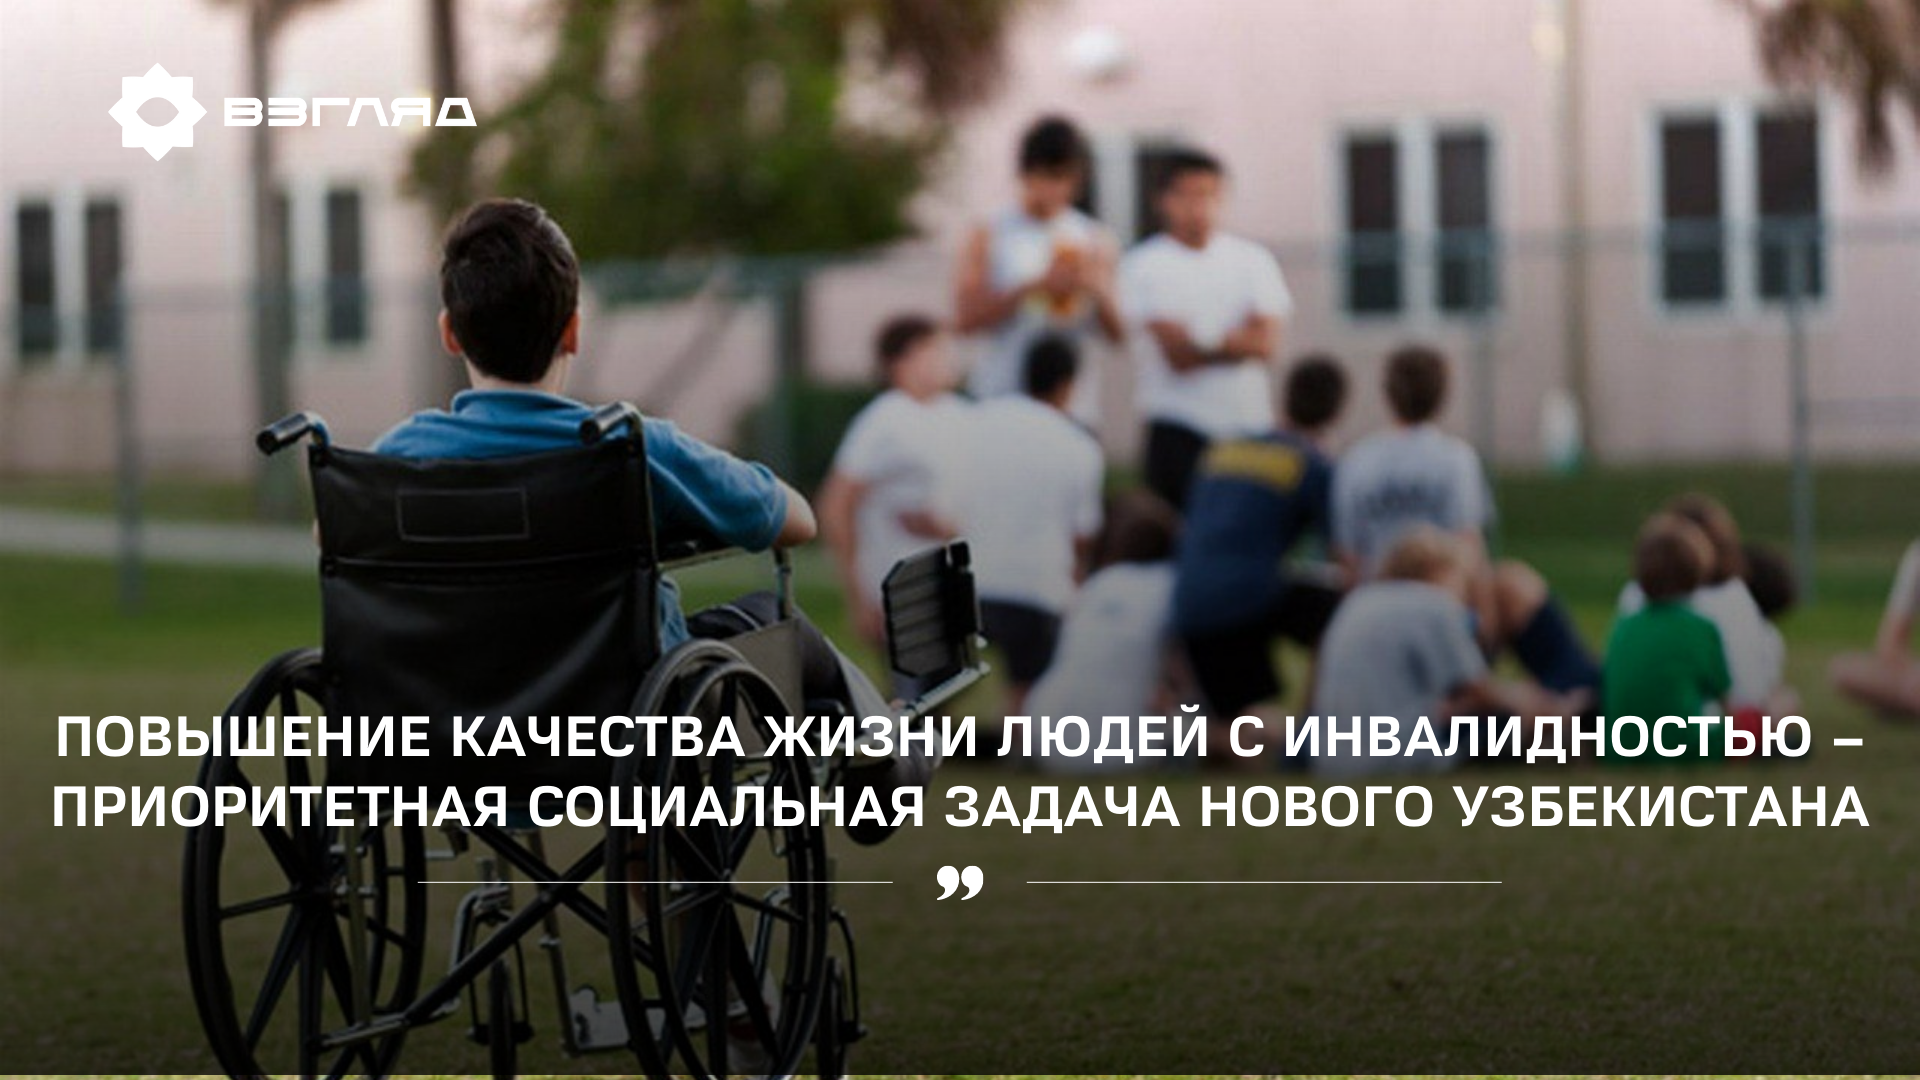 «Высокий уровень жизни для всех — цель гуманистического общества»: о повышении качества жизни людей с инвалидностью 